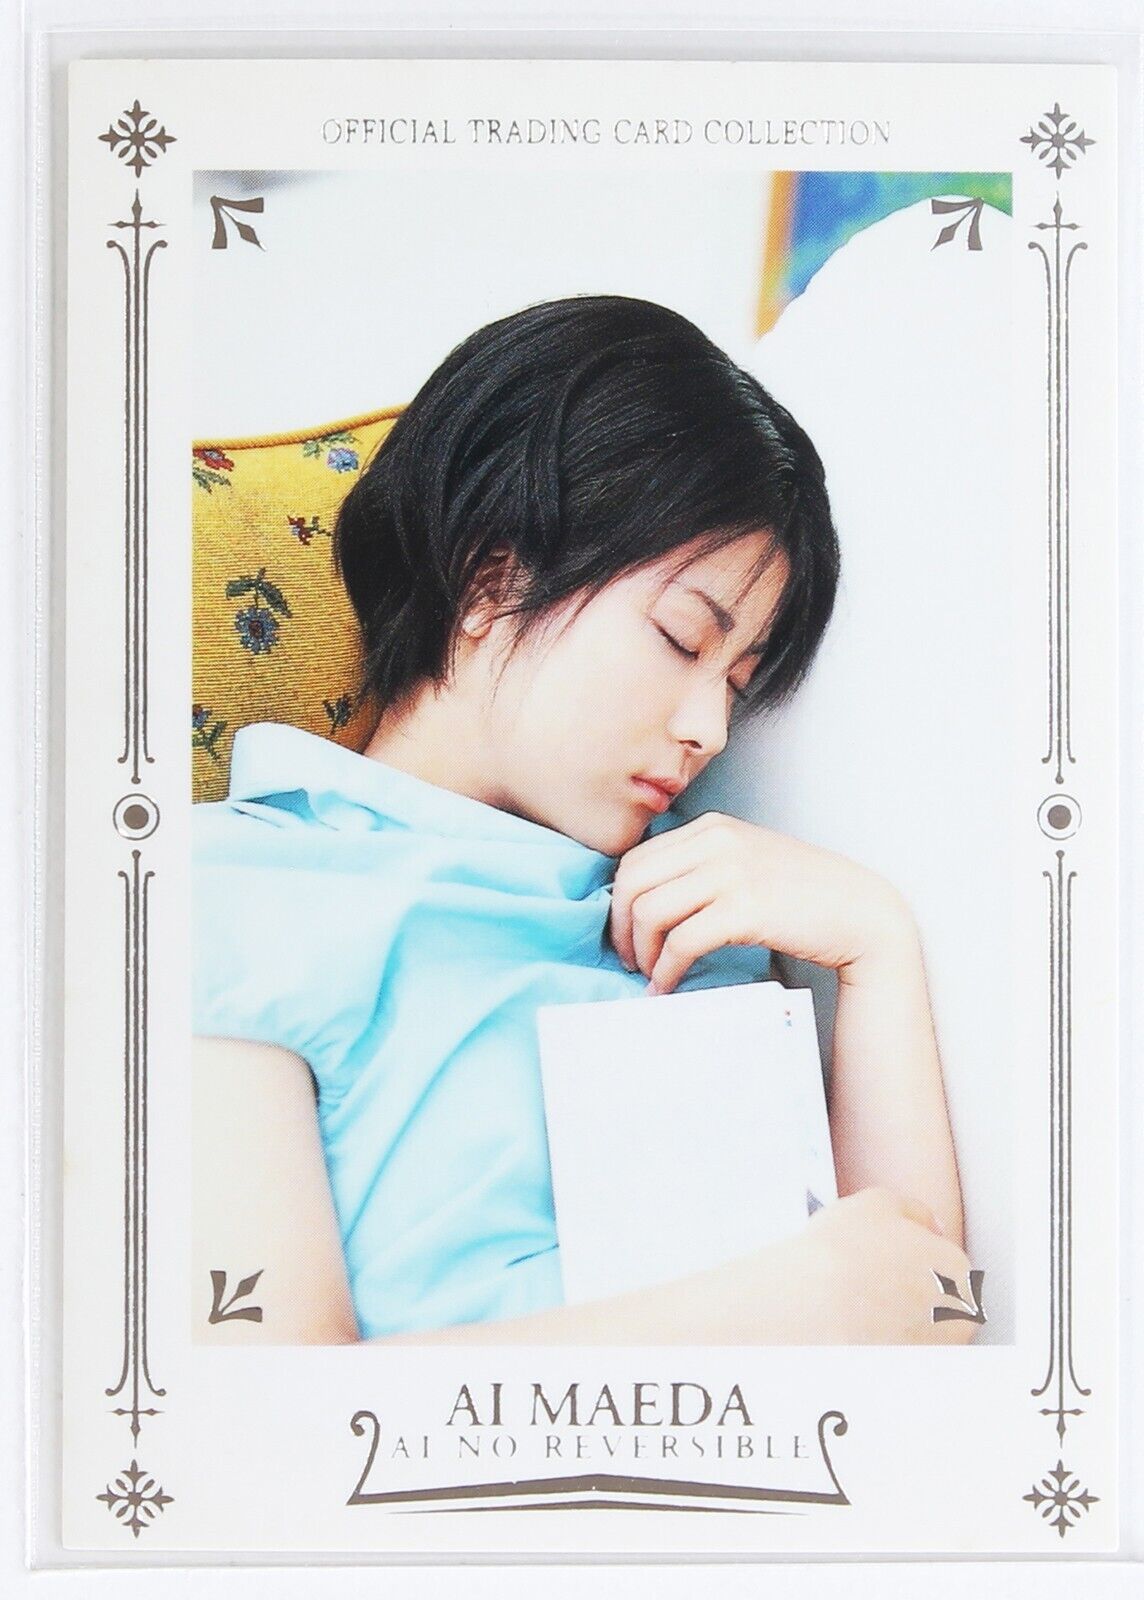 AI MAEDA NO.04 -ai no reversible- Japanese Actress Trading foil stamping Card